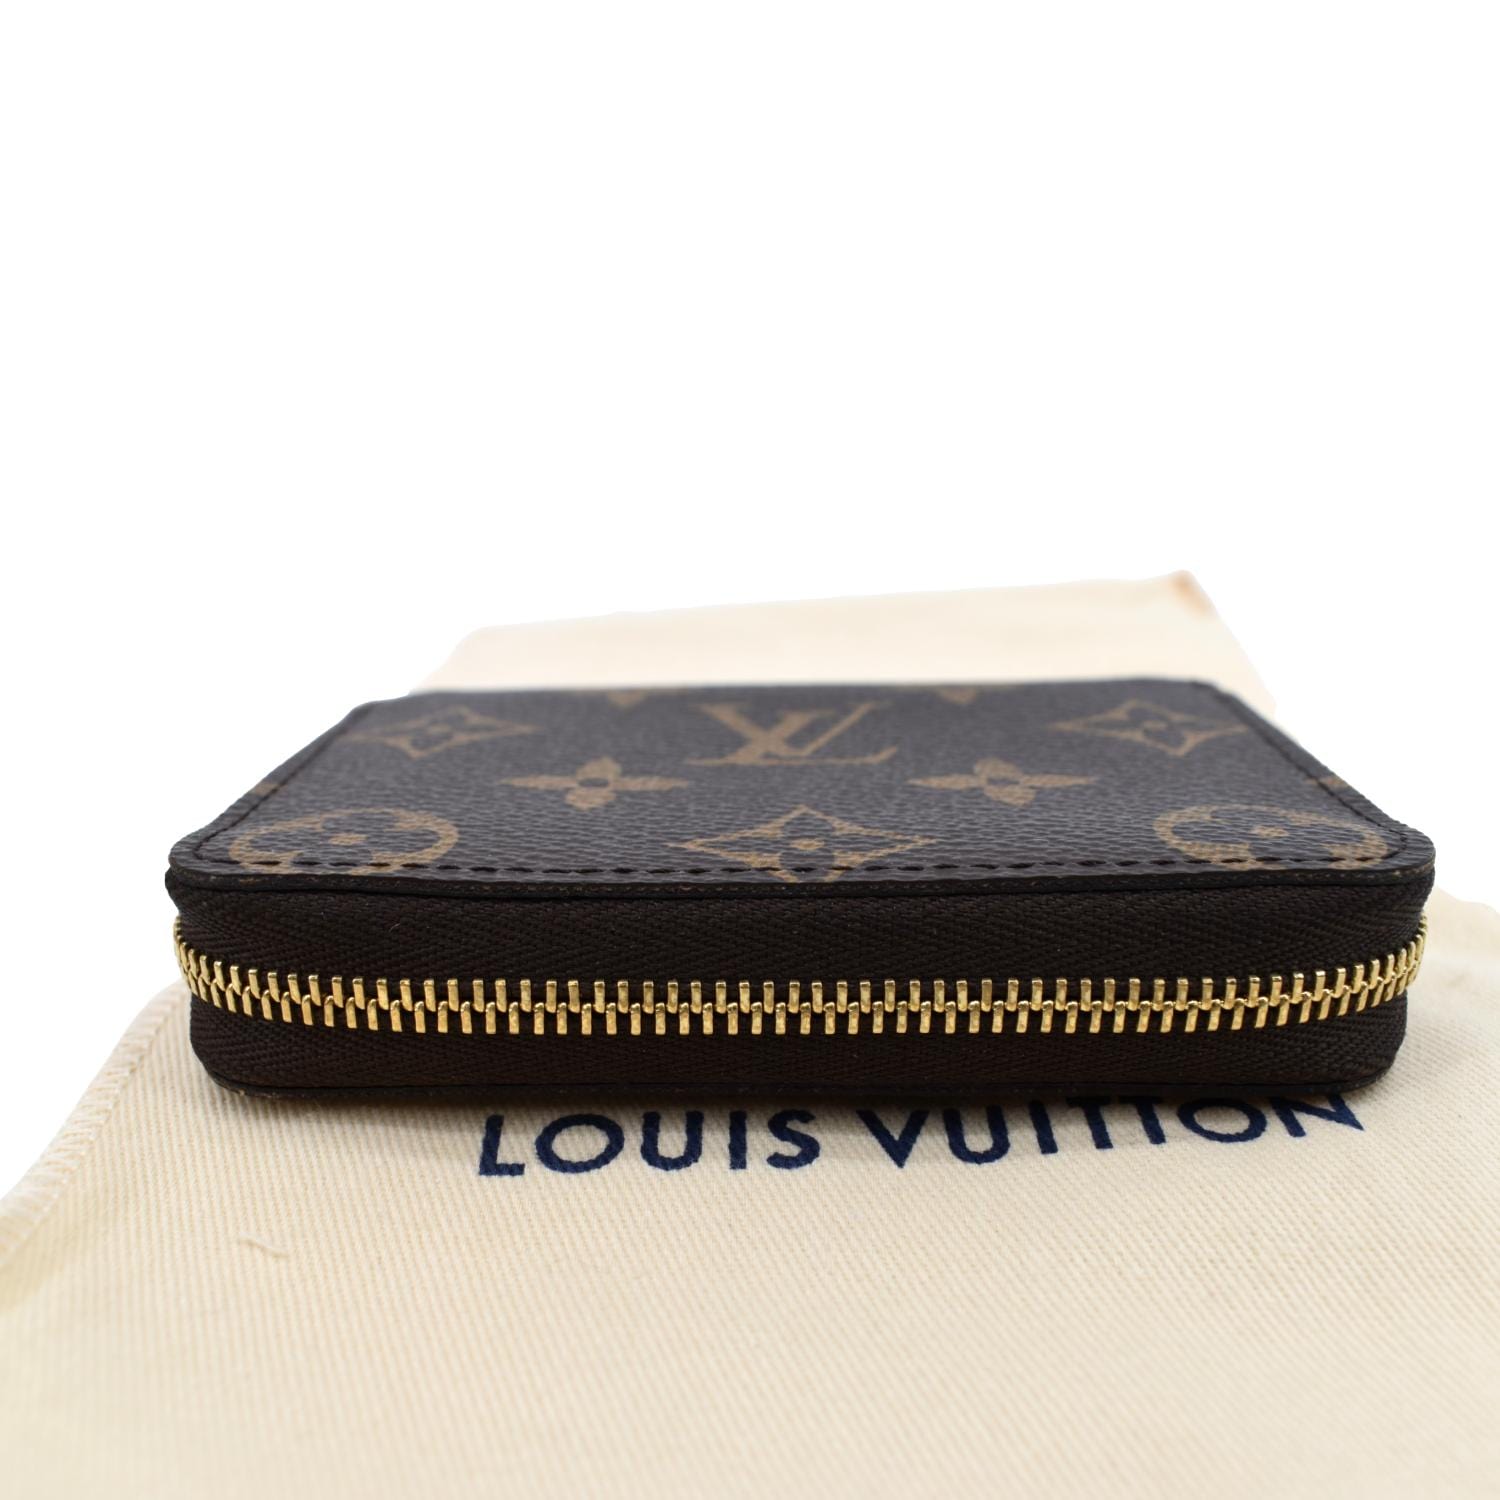 Louis Vuitton Zippy Monogram Canvas Coin Purse on SALE